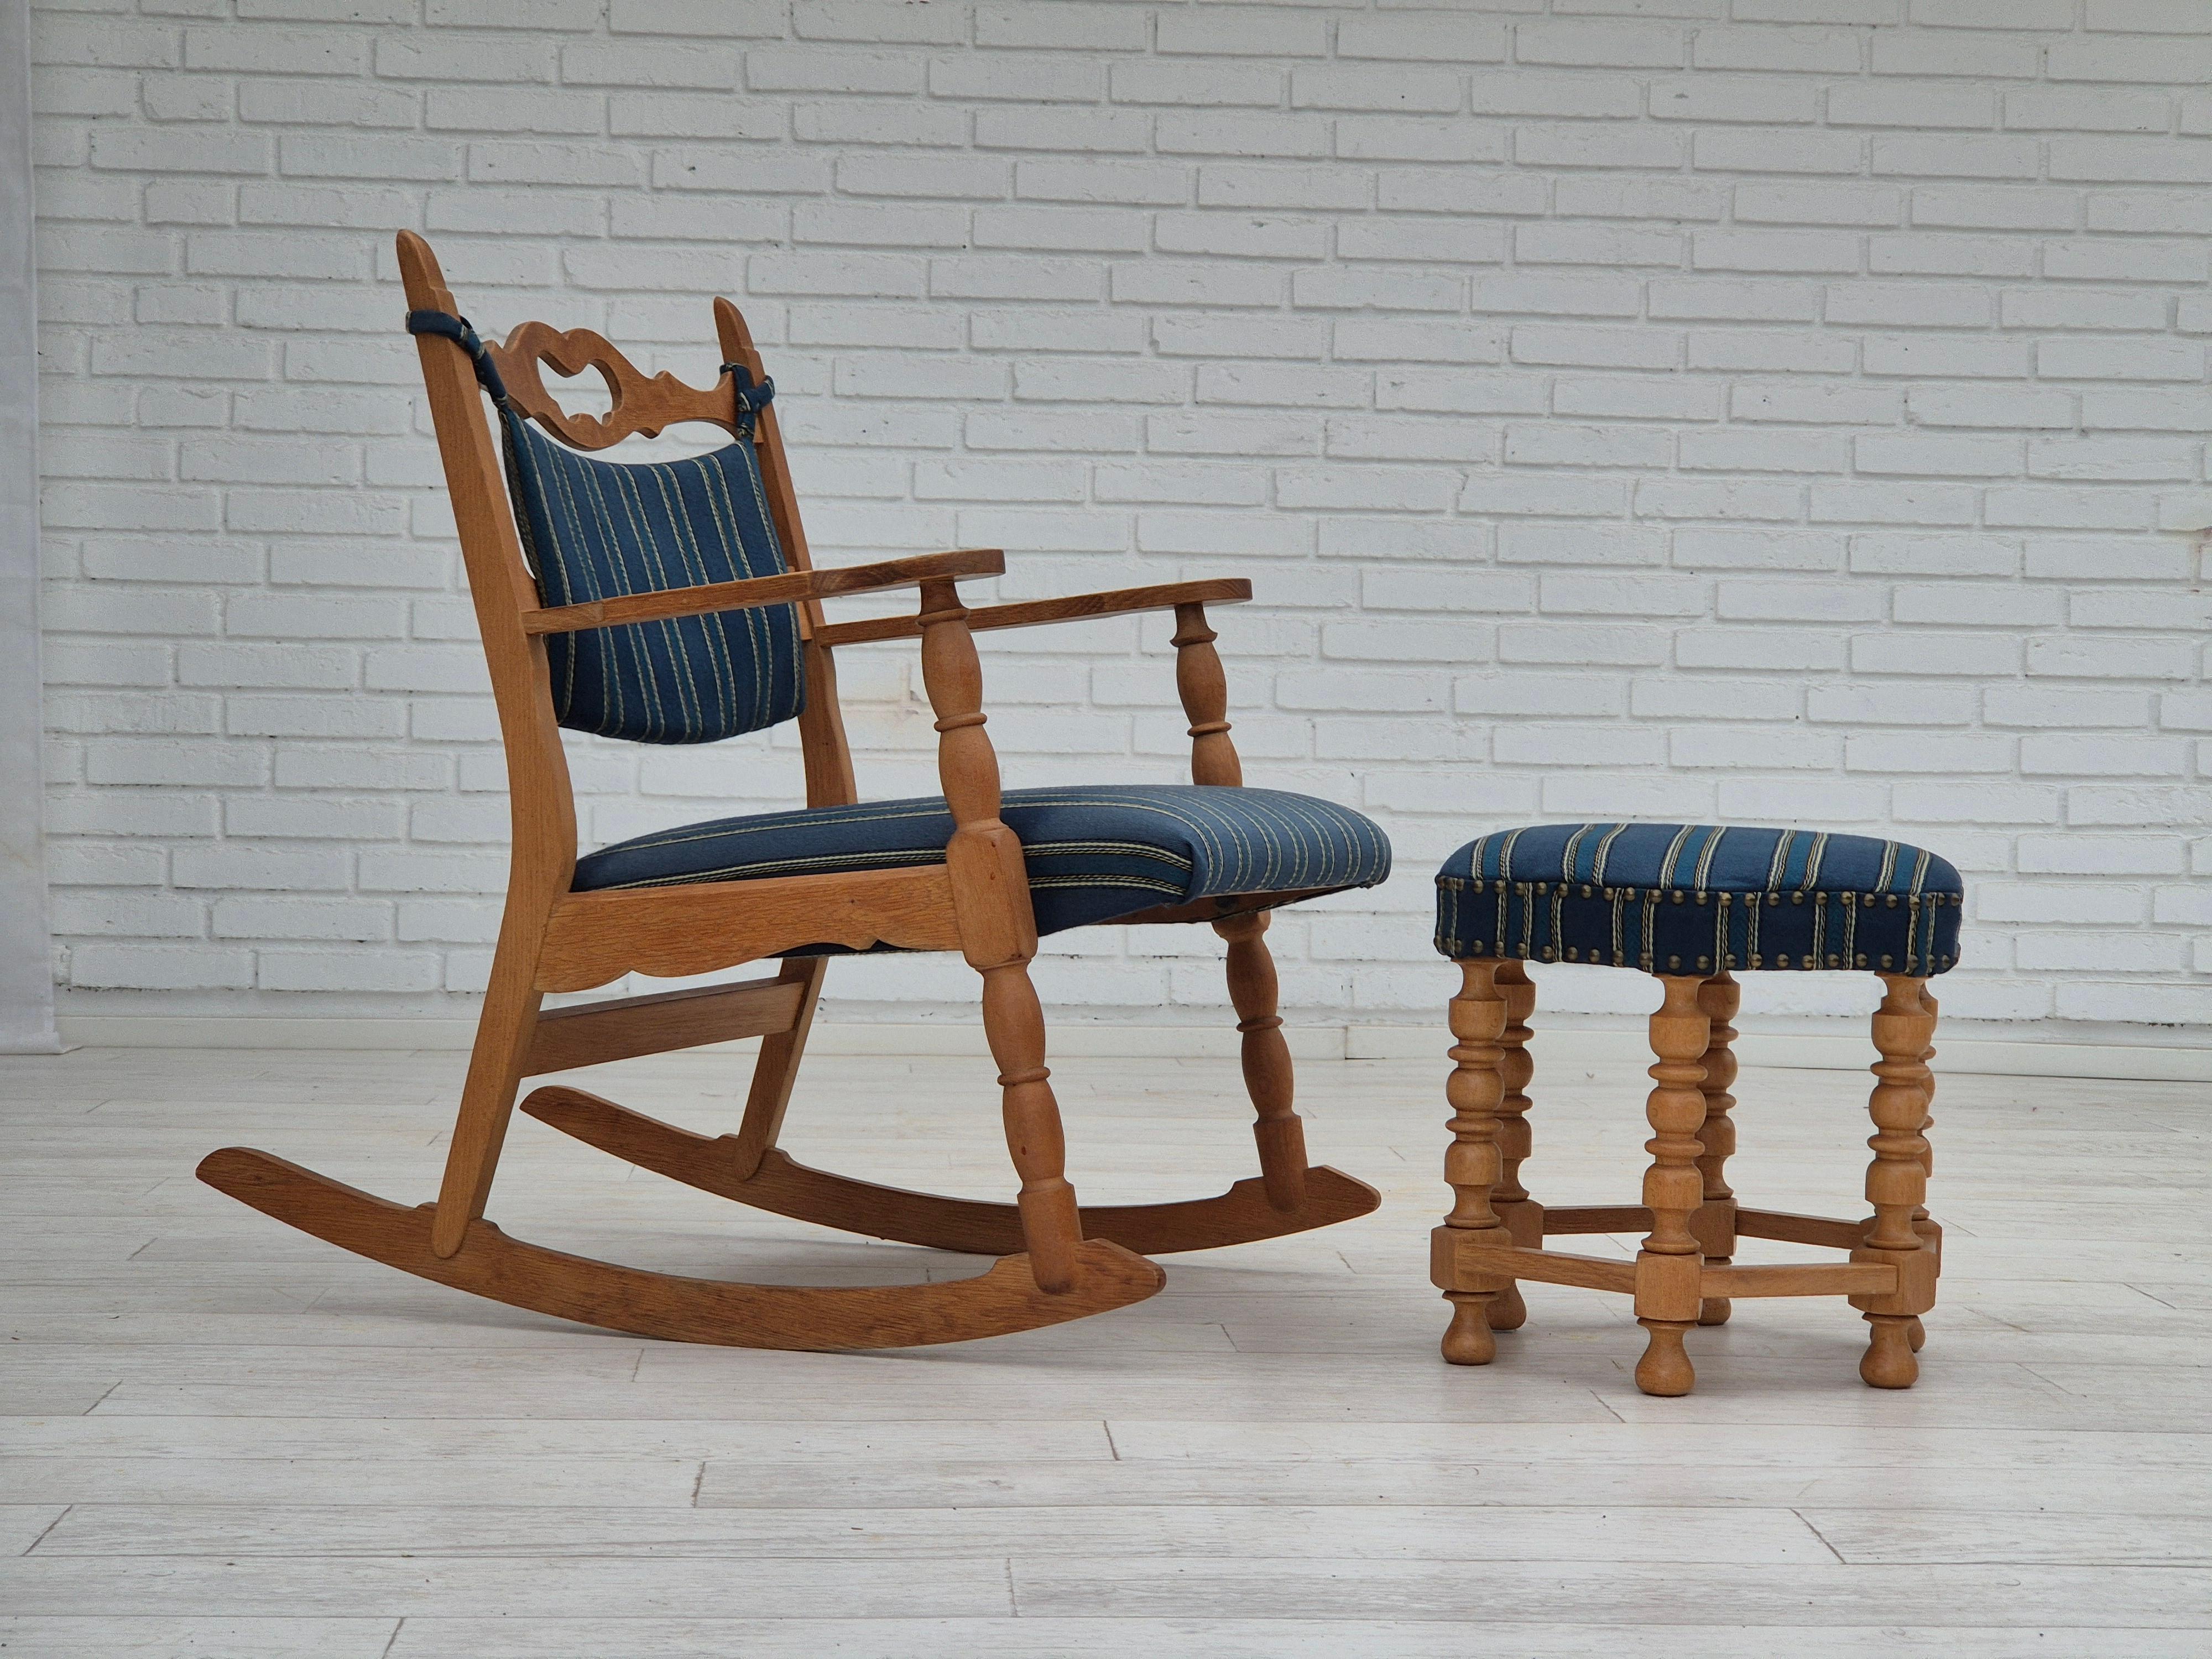 1970, fauteuil à bascule danois avec pouf. Très bon état d'origine : pas d'odeurs ni de taches. Bois de chêne, laine bleue pour meubles. Fabriqué par un fabricant de meubles danois dans les années 1965-70.